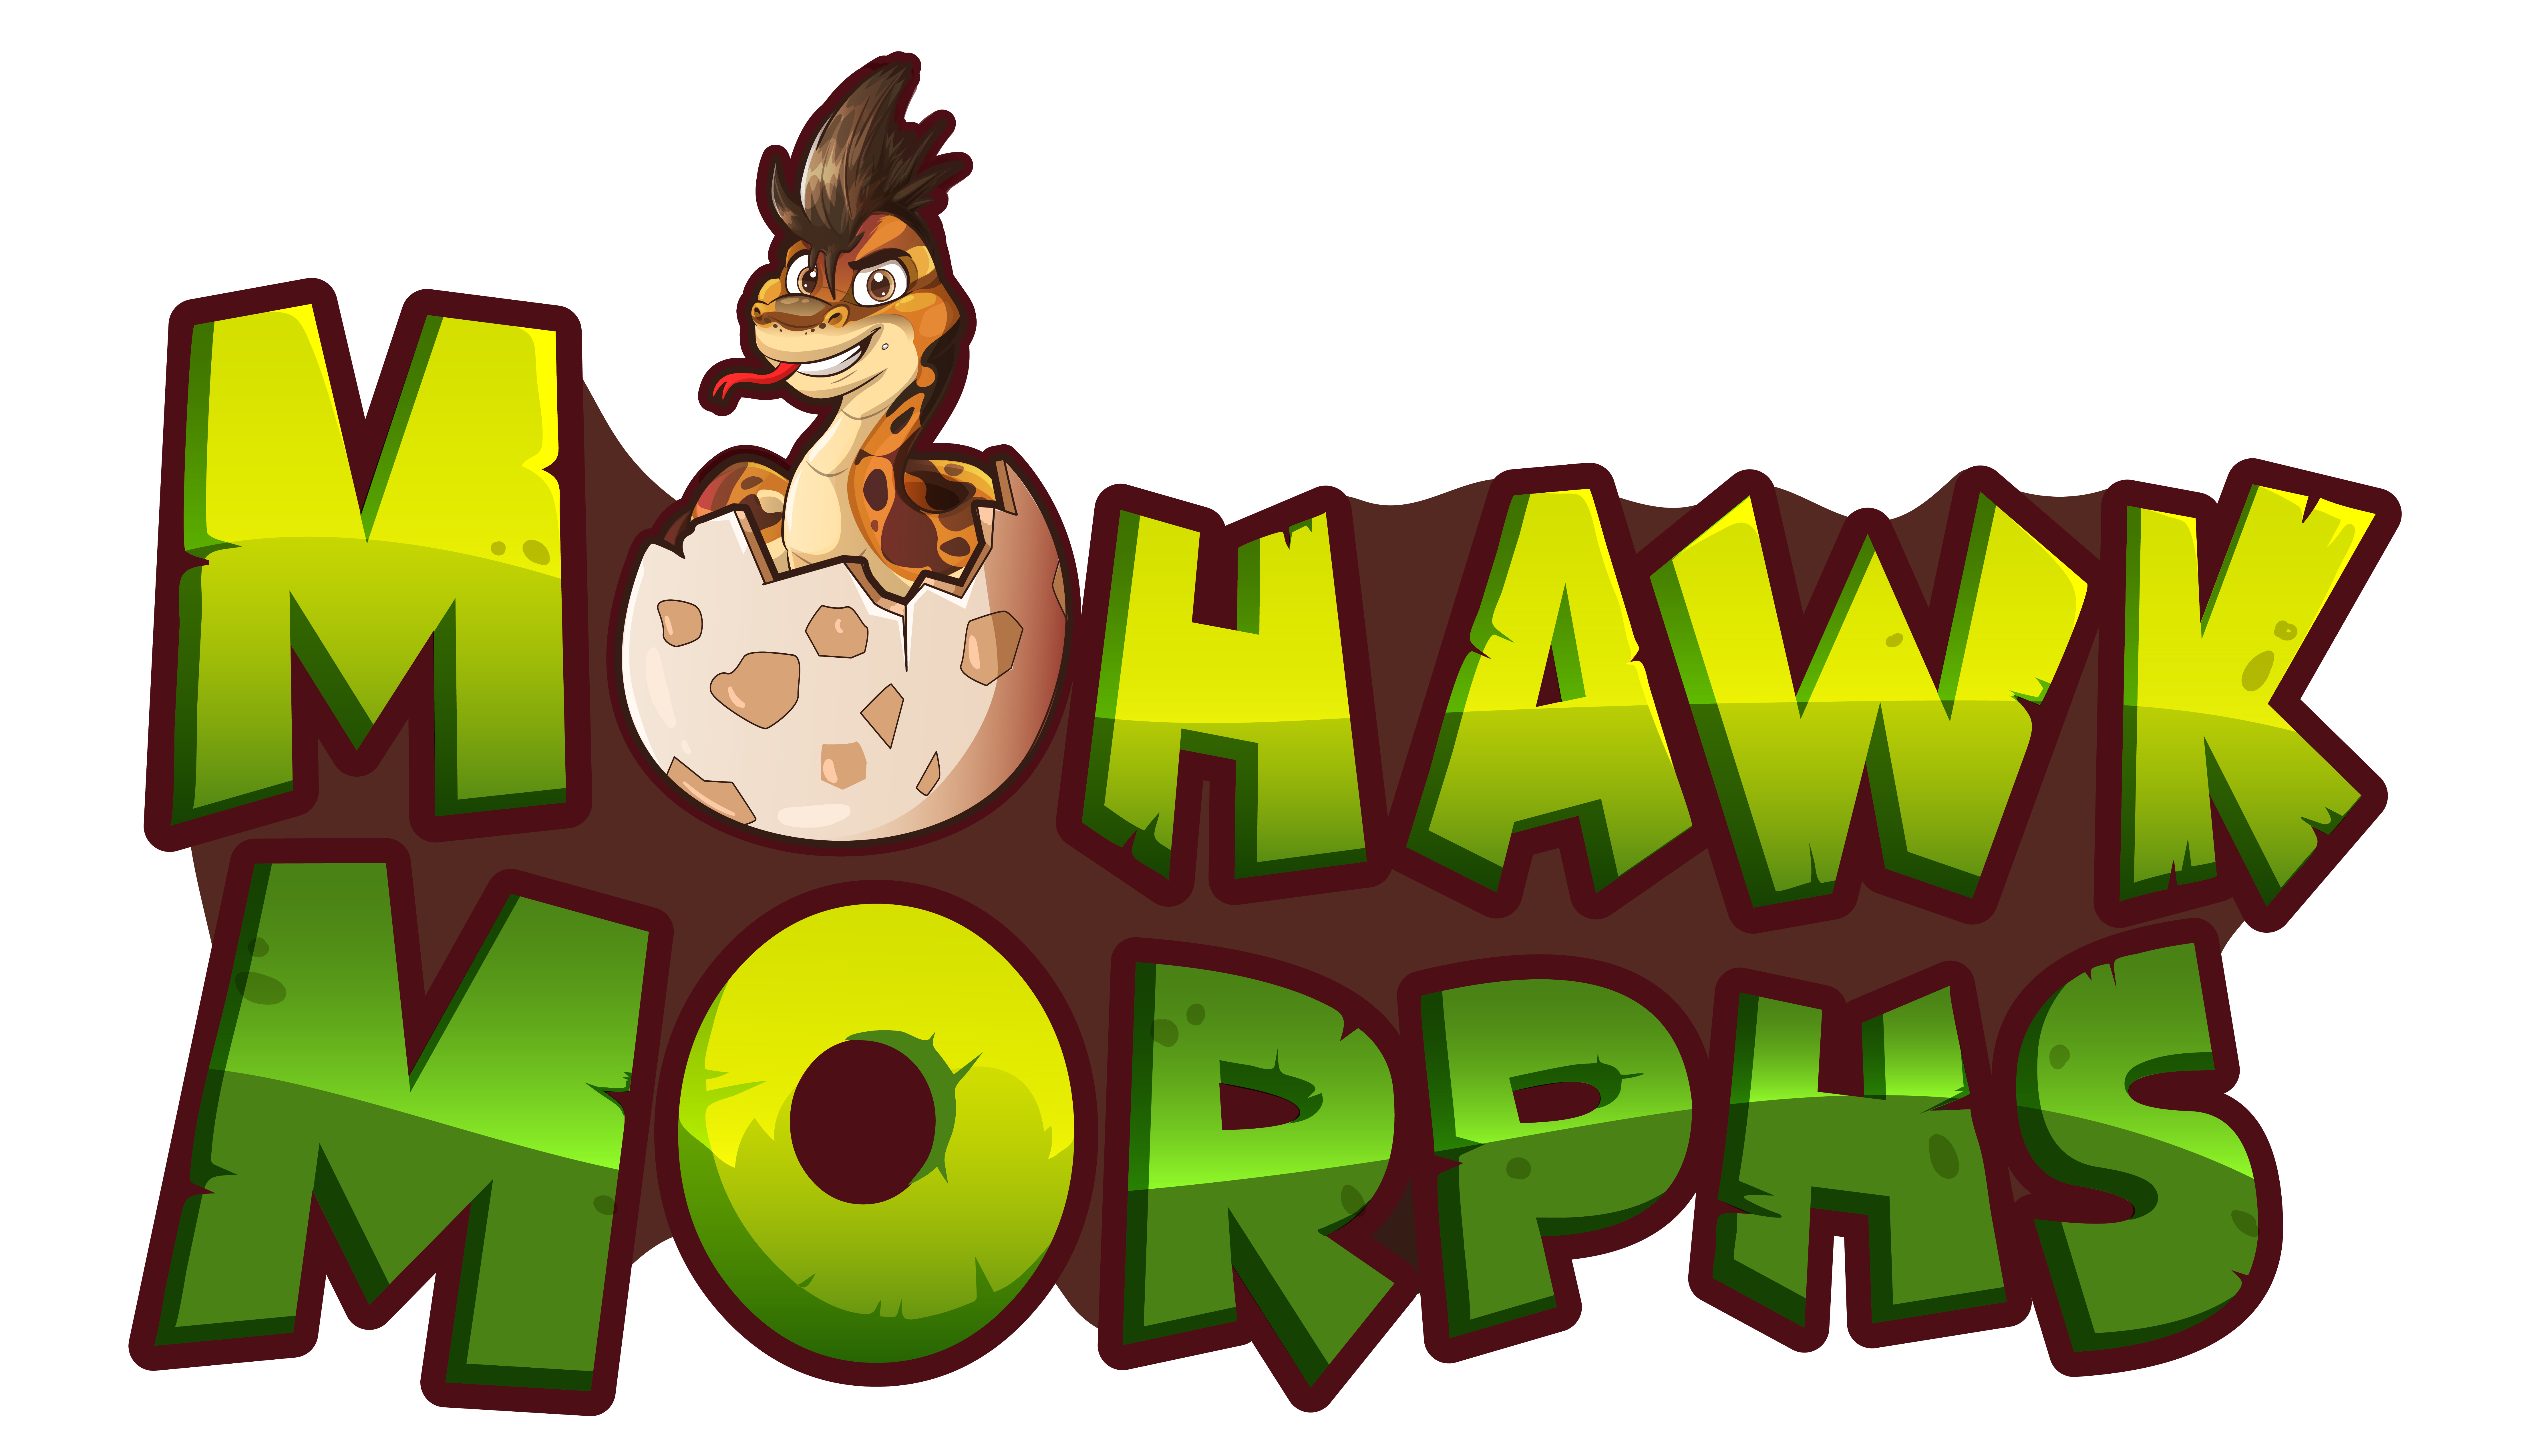 Mohawk Morphs